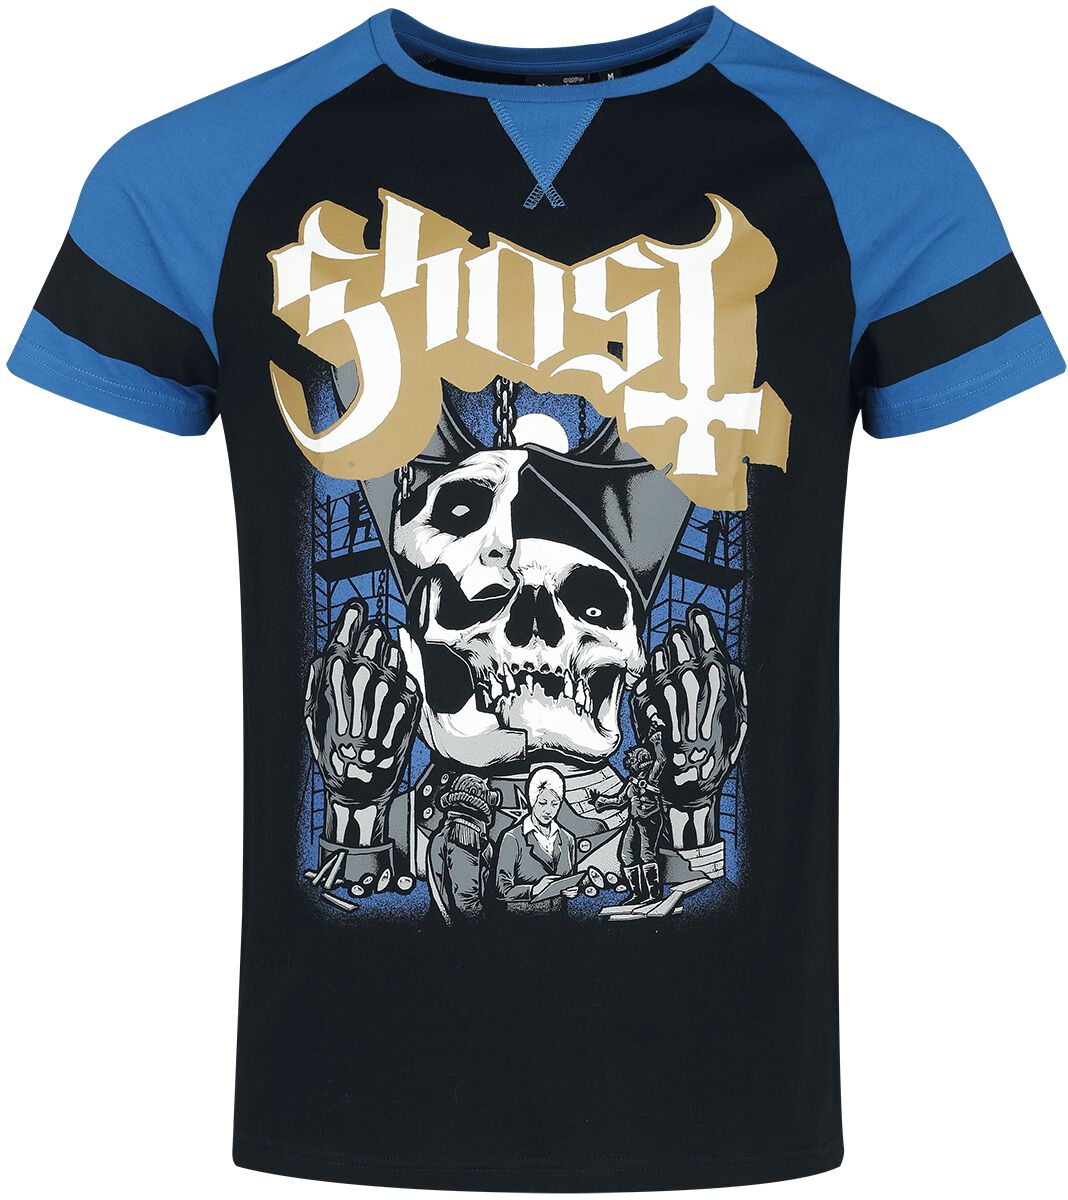 Ghost T-Shirt - EMP Signature Collection - S bis 3XL - für Männer - Größe M - schwarz/blau  - EMP exklusives Merchandise!